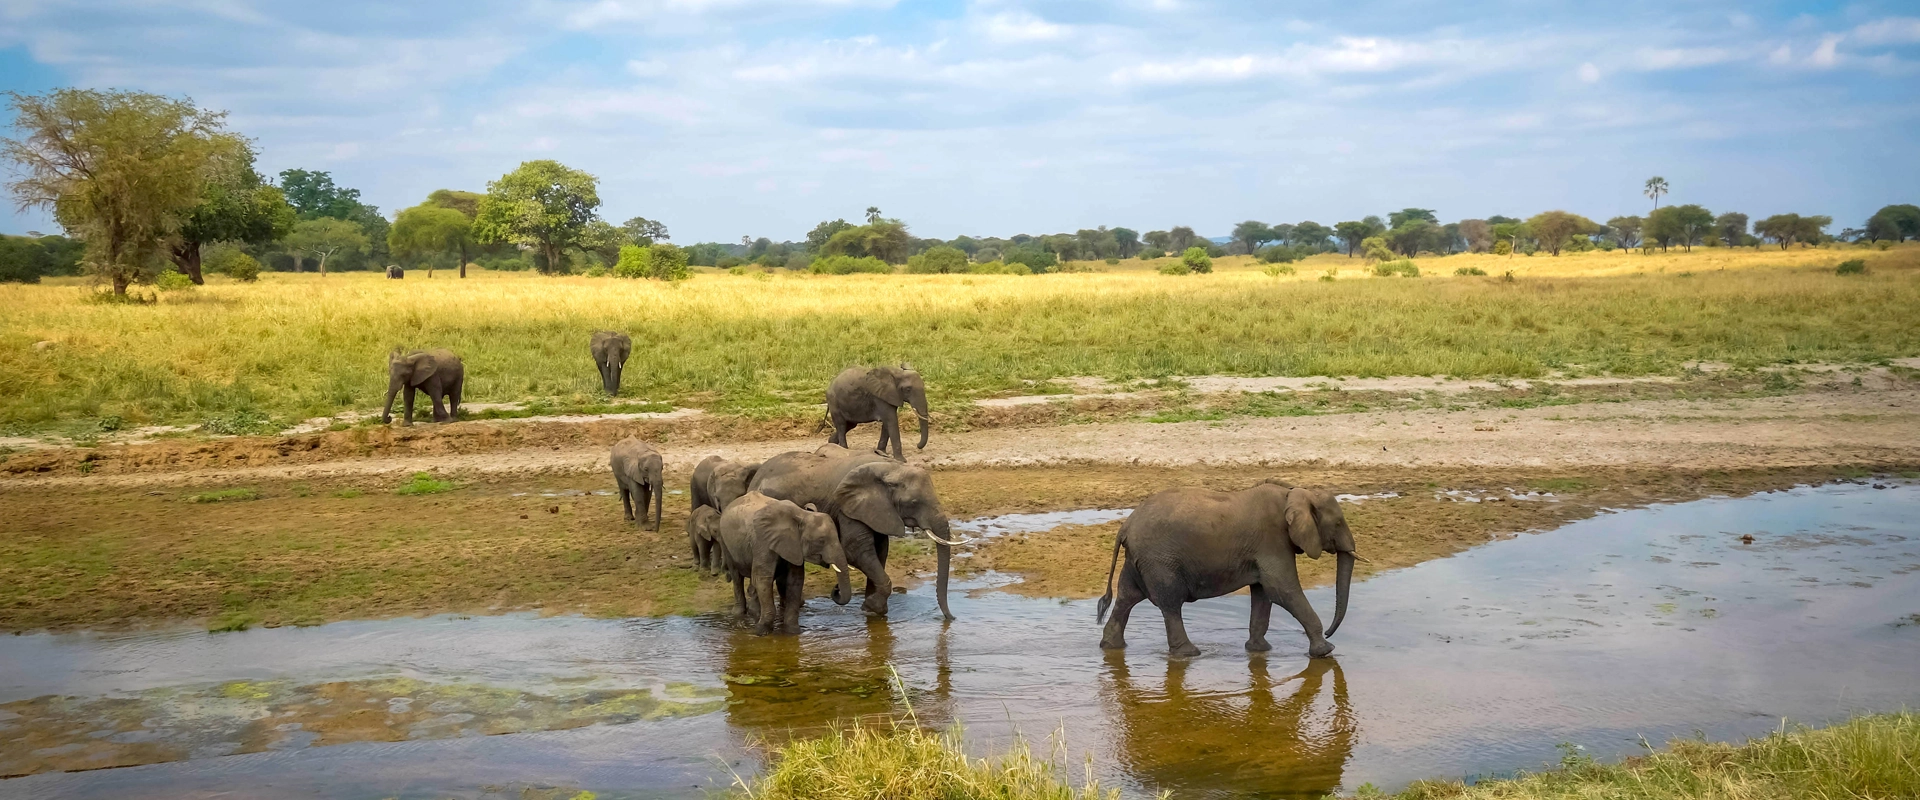 grande migration Tanzanie elephant parc national de Tarangire